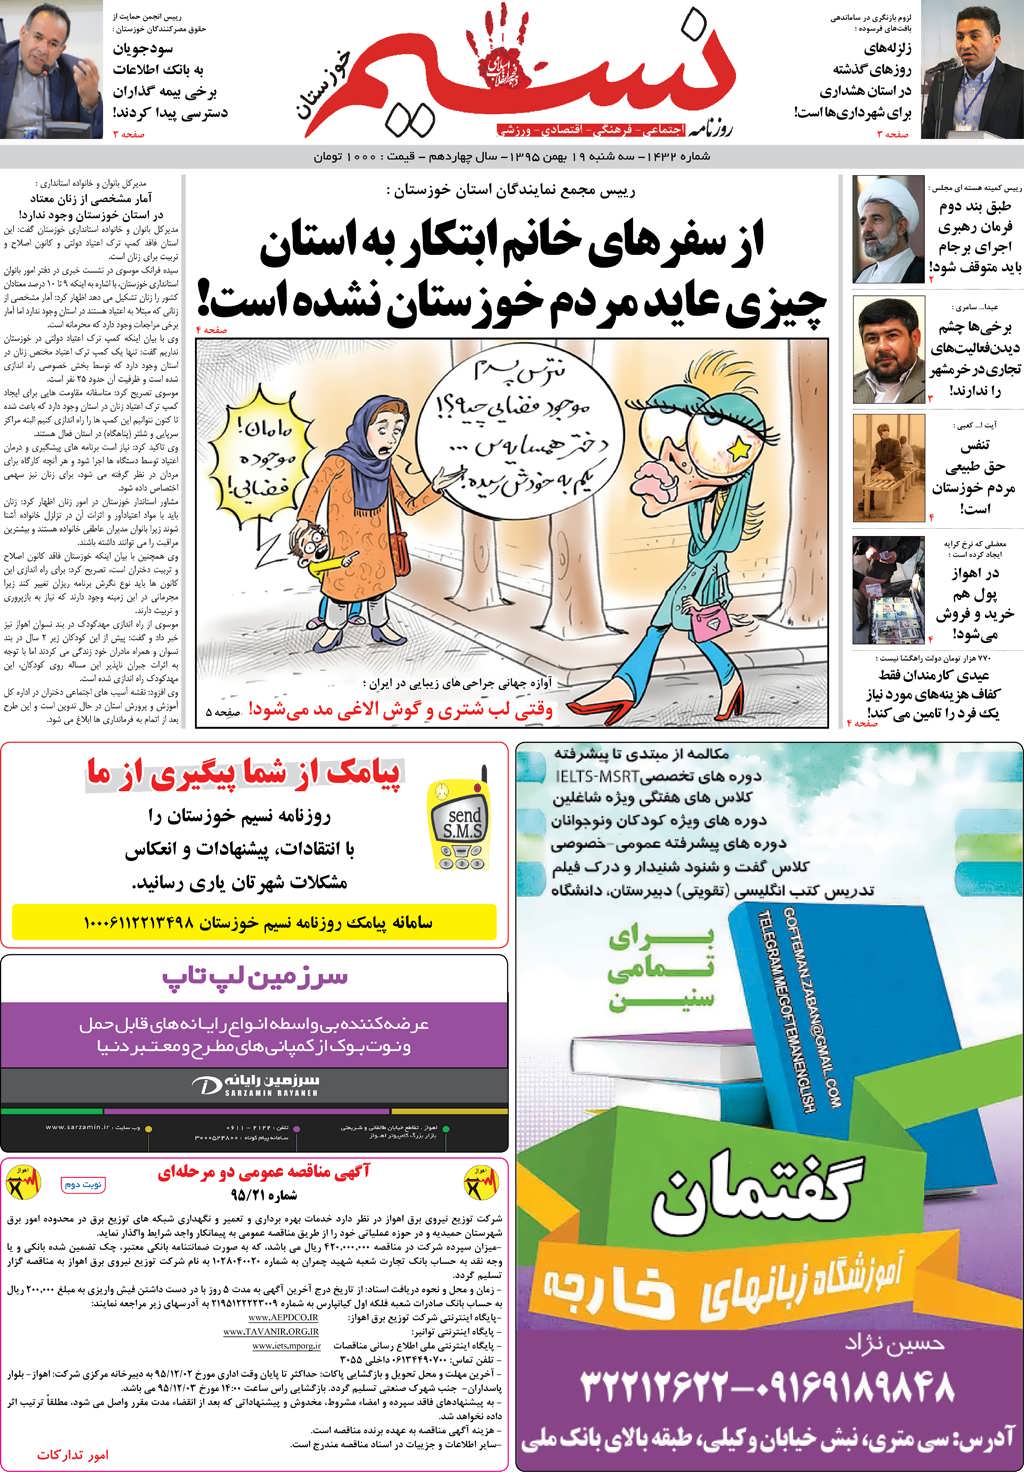 صفحه اصلی روزنامه نسیم شماره 1432